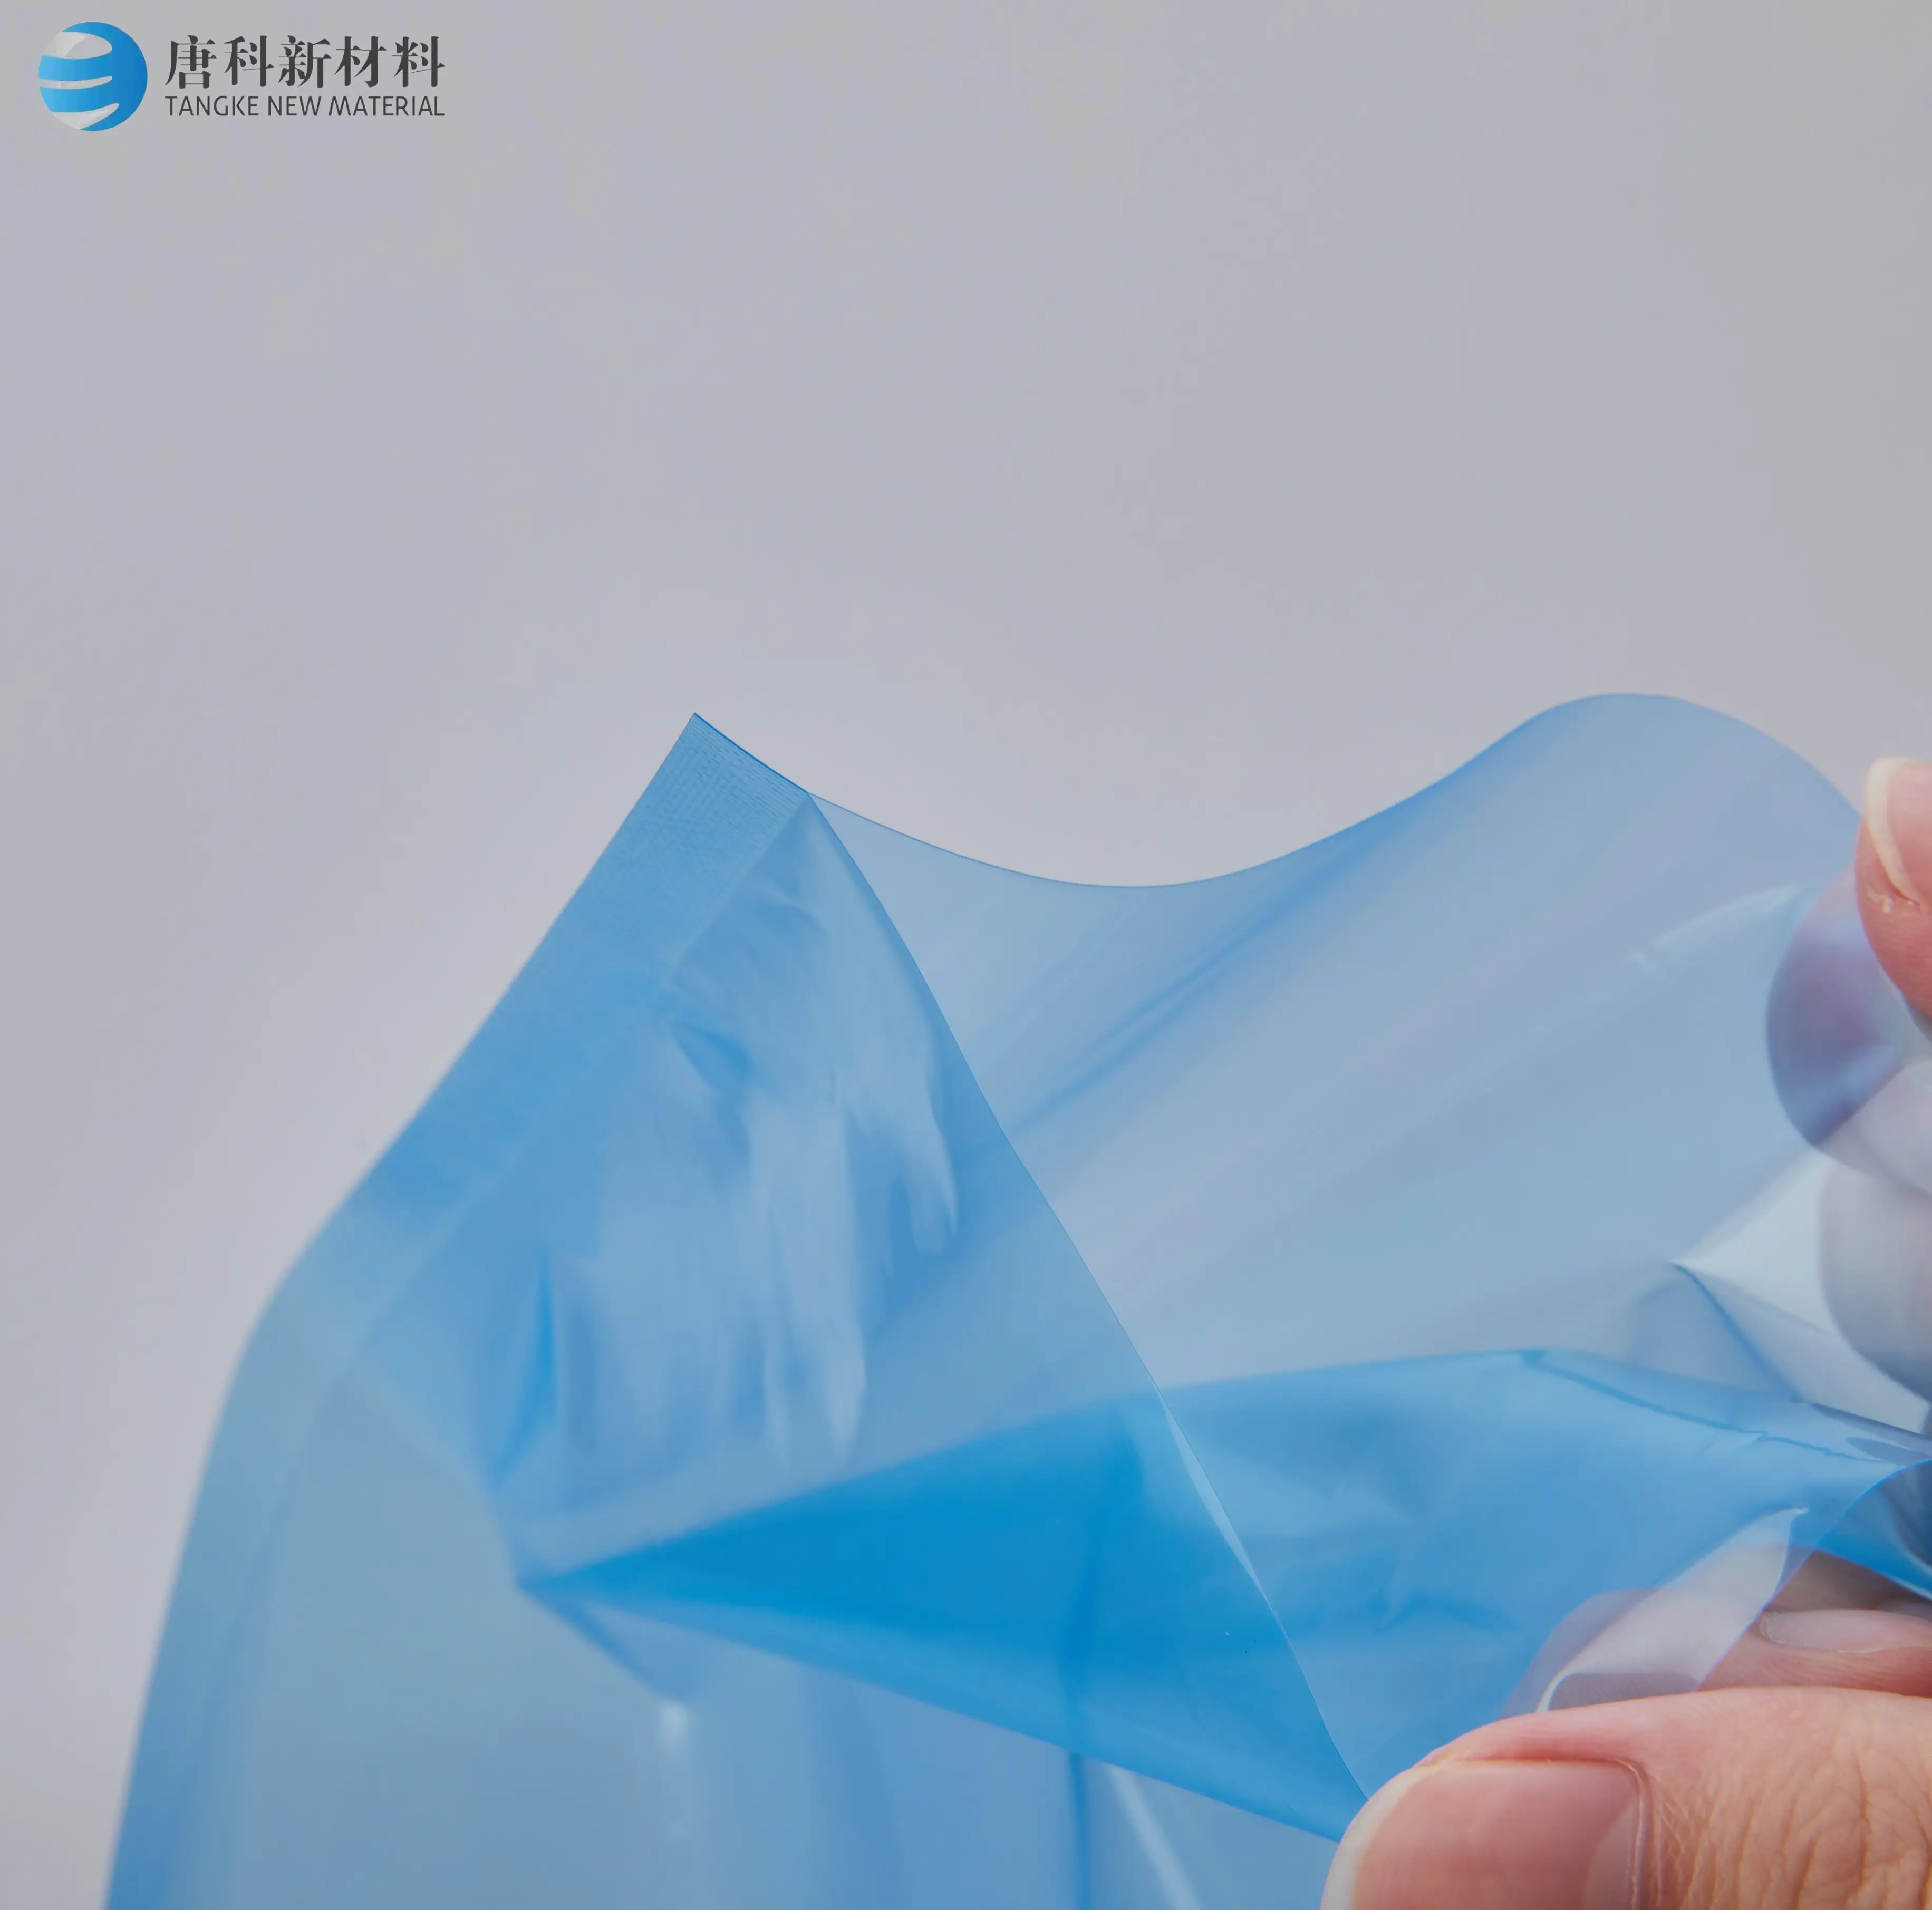 ถุงม้วนพลาสติกสูญญากาศถุงบรรจุภัณฑ์เครื่องสำอางแบบปิดผนึกด้วยความร้อนถุงป้องกันสำหรับอุตสาหกรรม